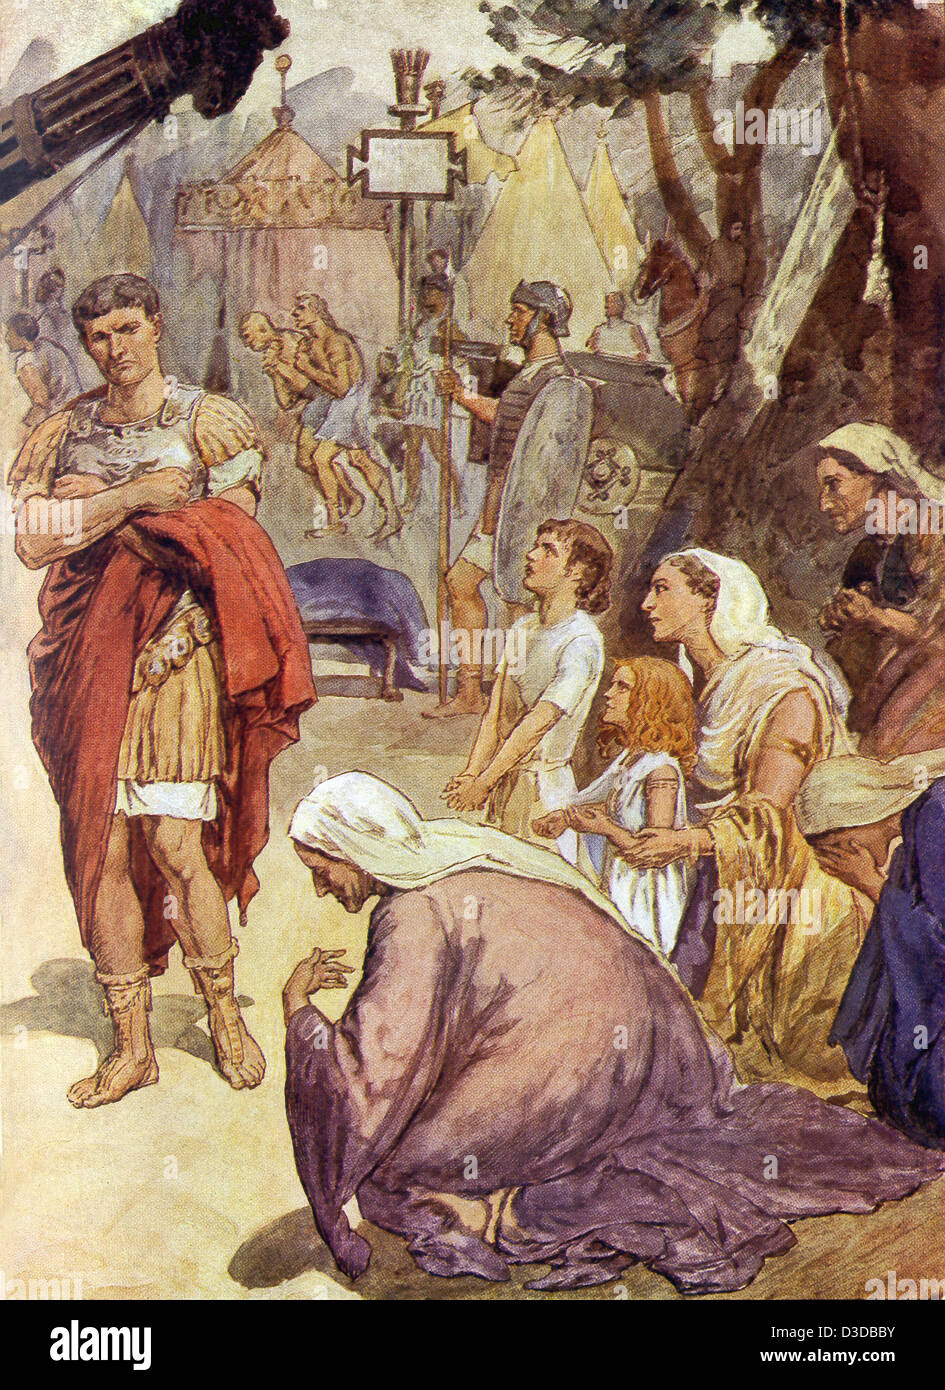 Patricien romain Coriolanus favorisé les patriciens et a été banni de Rome. Sa mère et épouse plus tard le supplie d'épargner Rome Banque D'Images